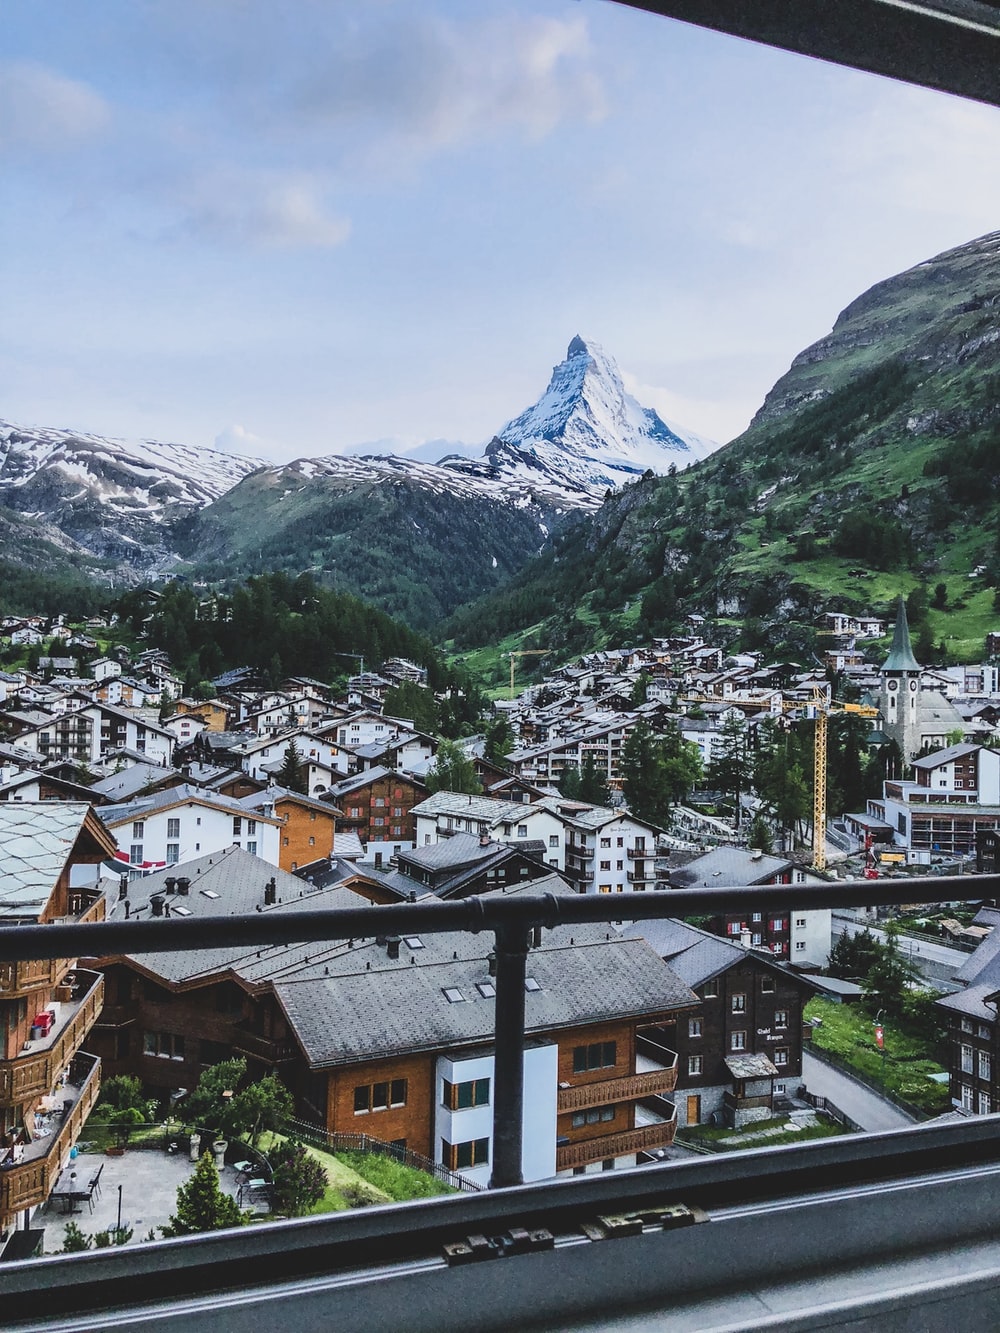 Zermatt, Switzerland Picture. Download Free Image